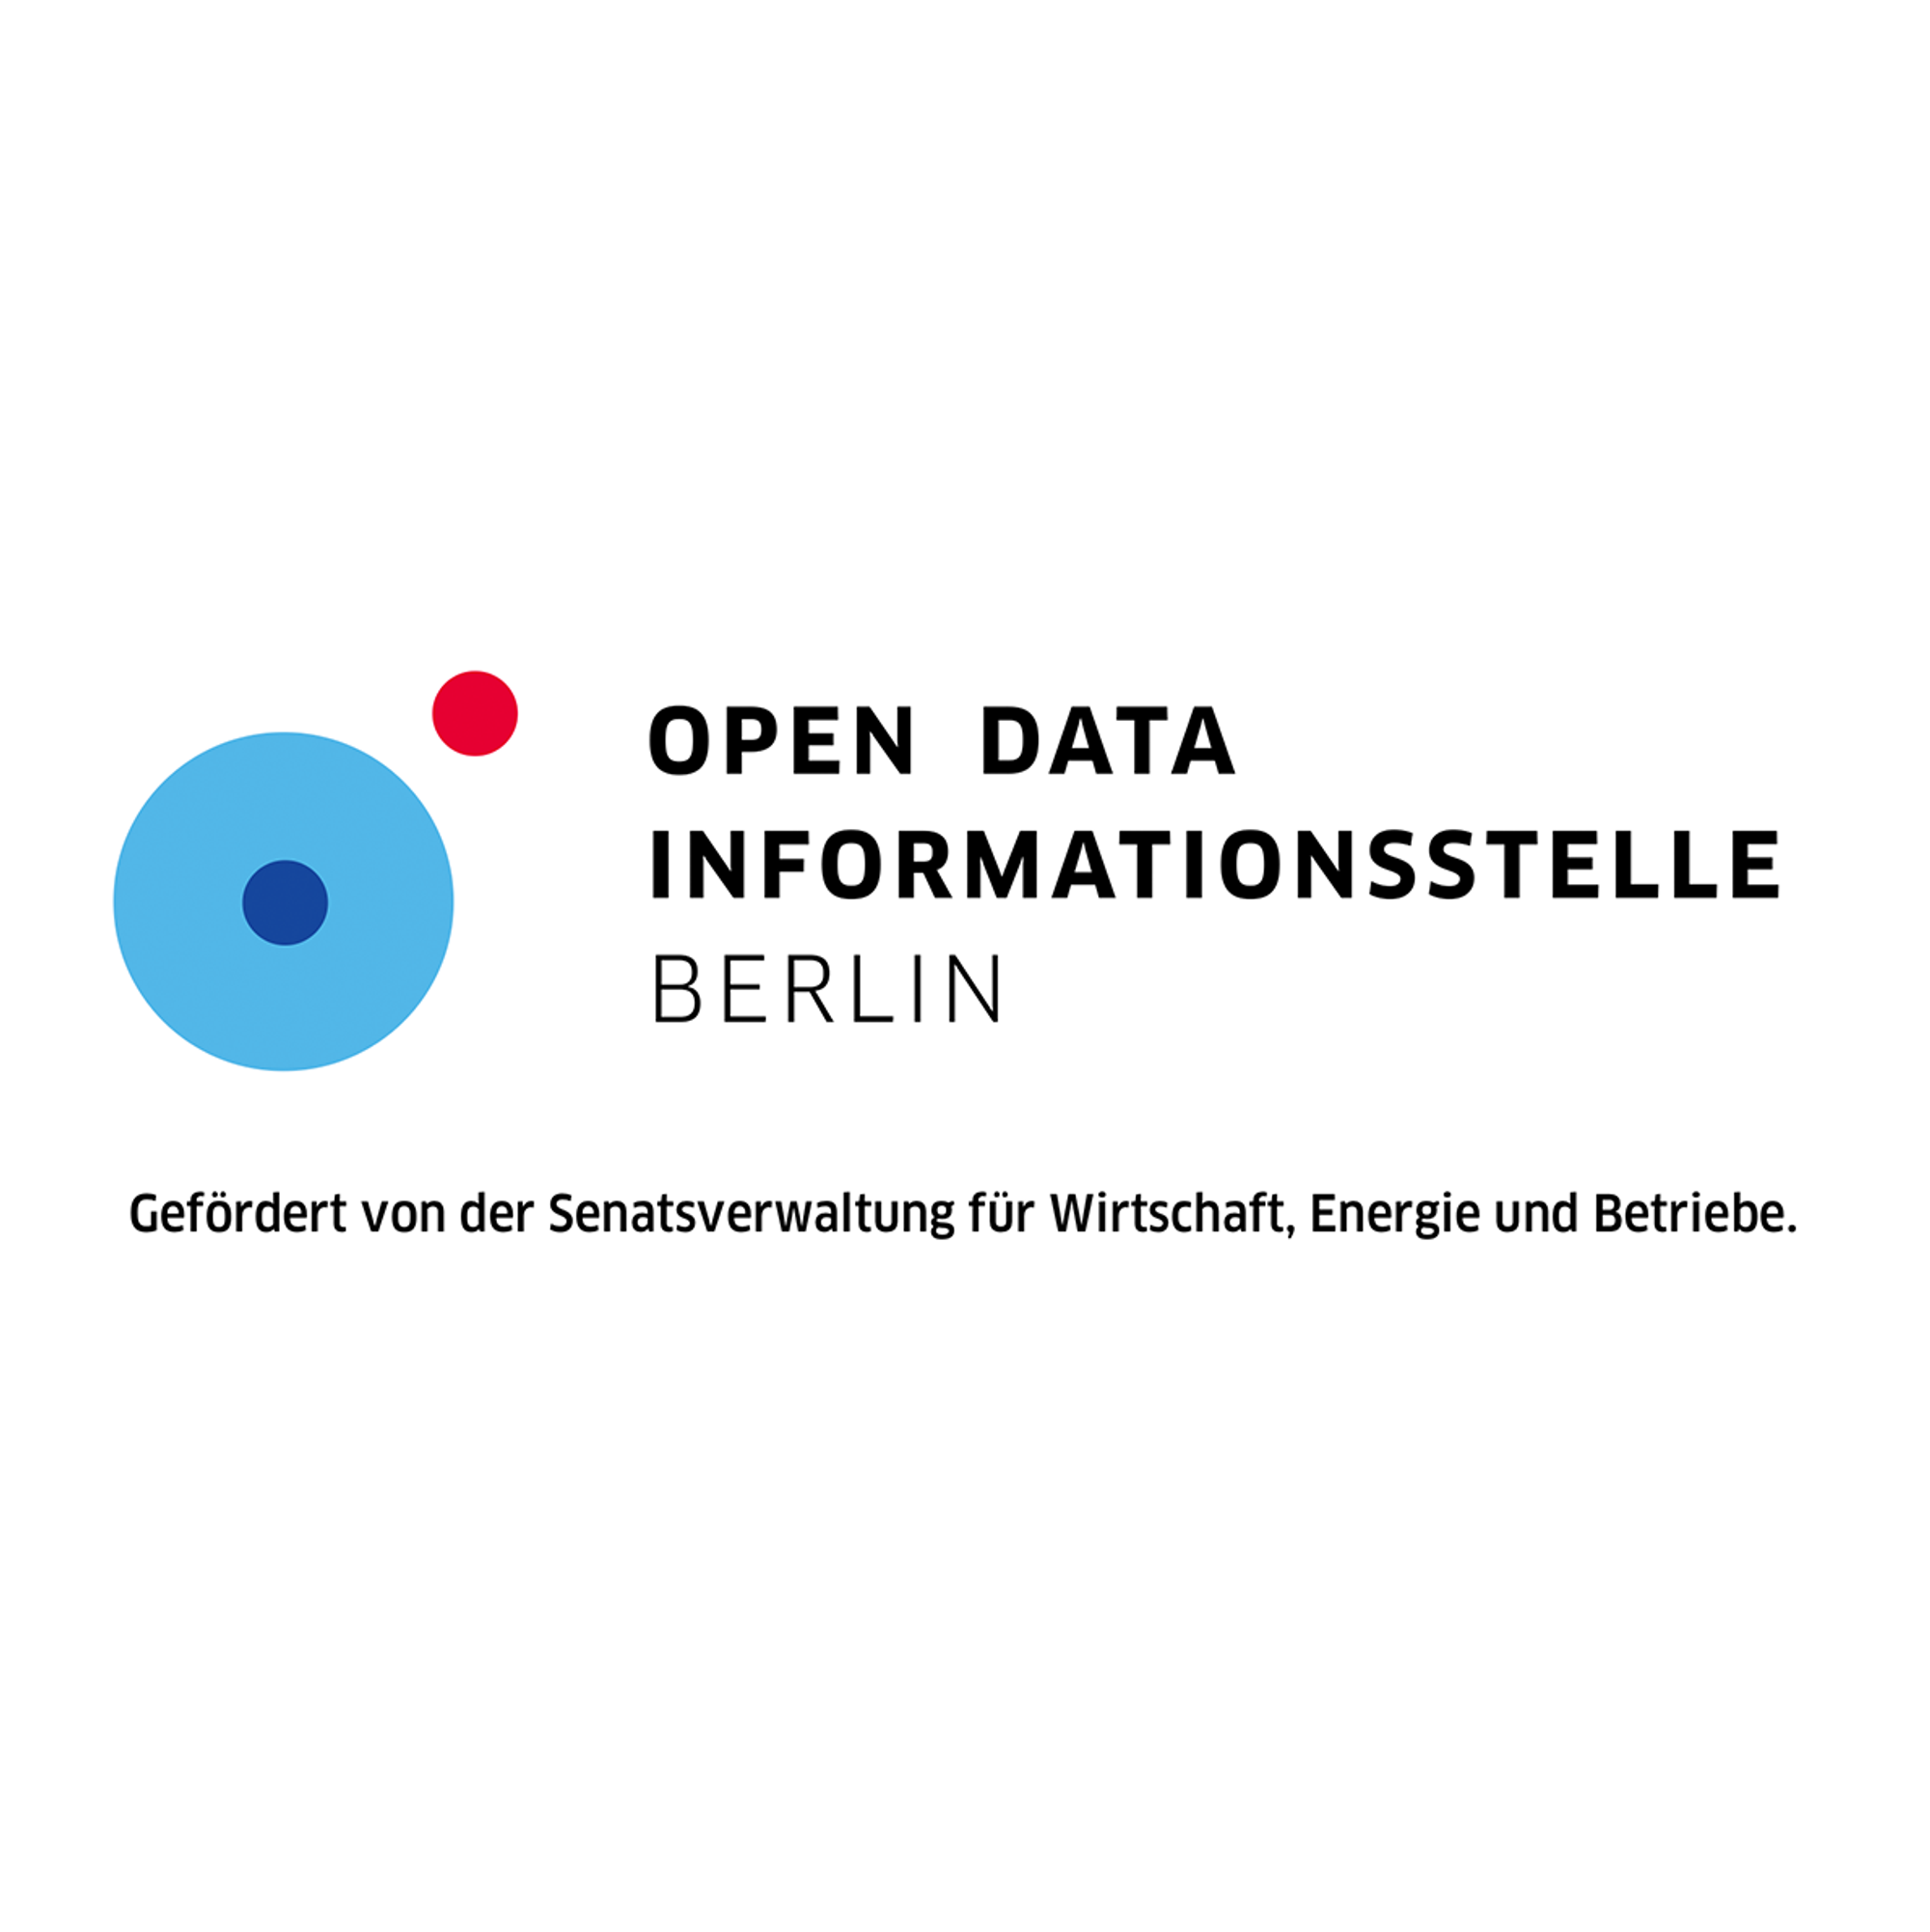 Die Open Data Informationsstelle